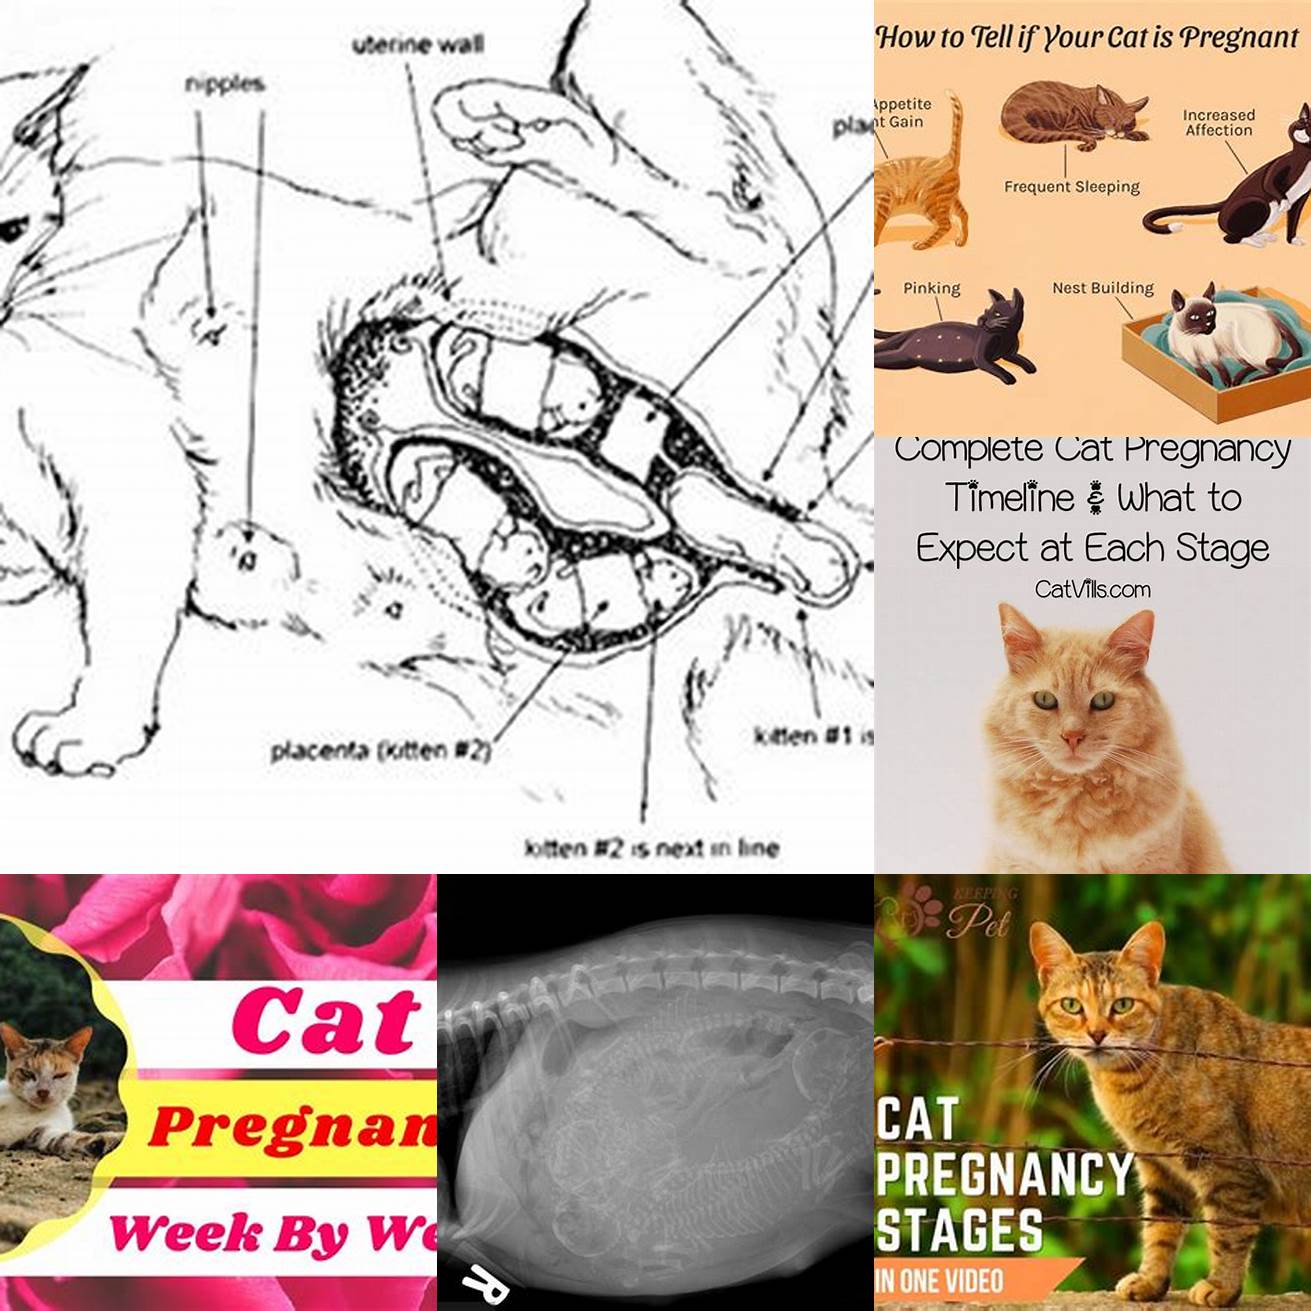 Cat pregnancy diagram